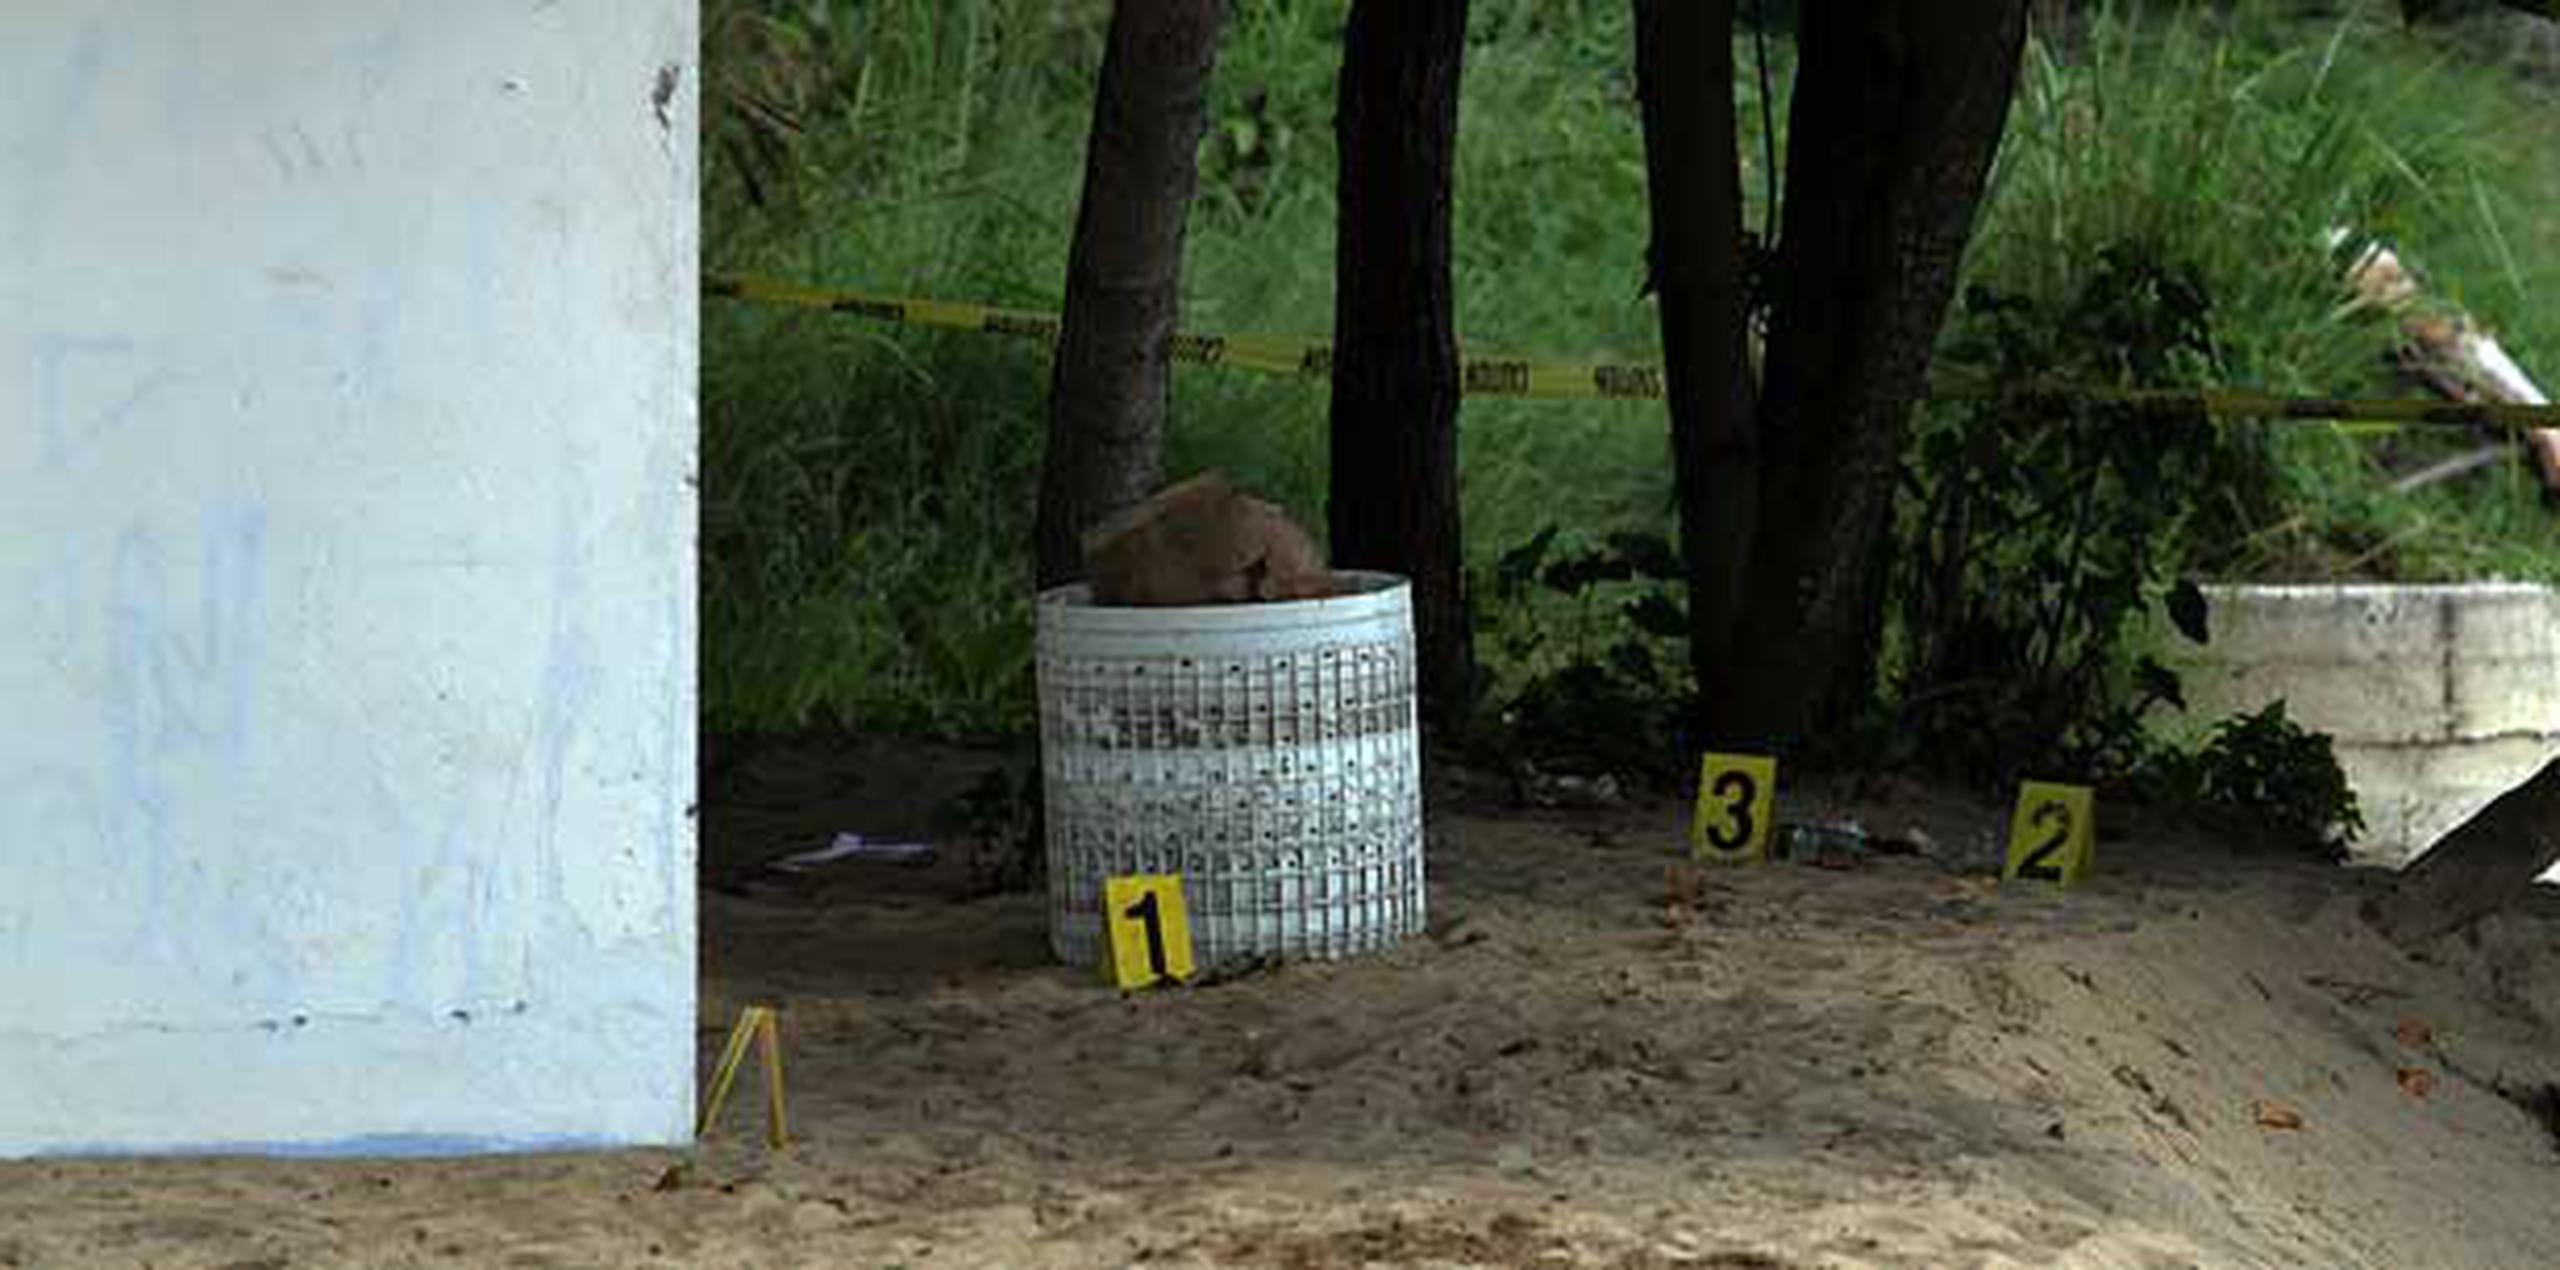 El niño fue encontrado el pasado año gravemente herido dentro el cilindro de una lavadora en una playa de Rincón. (Archivo)